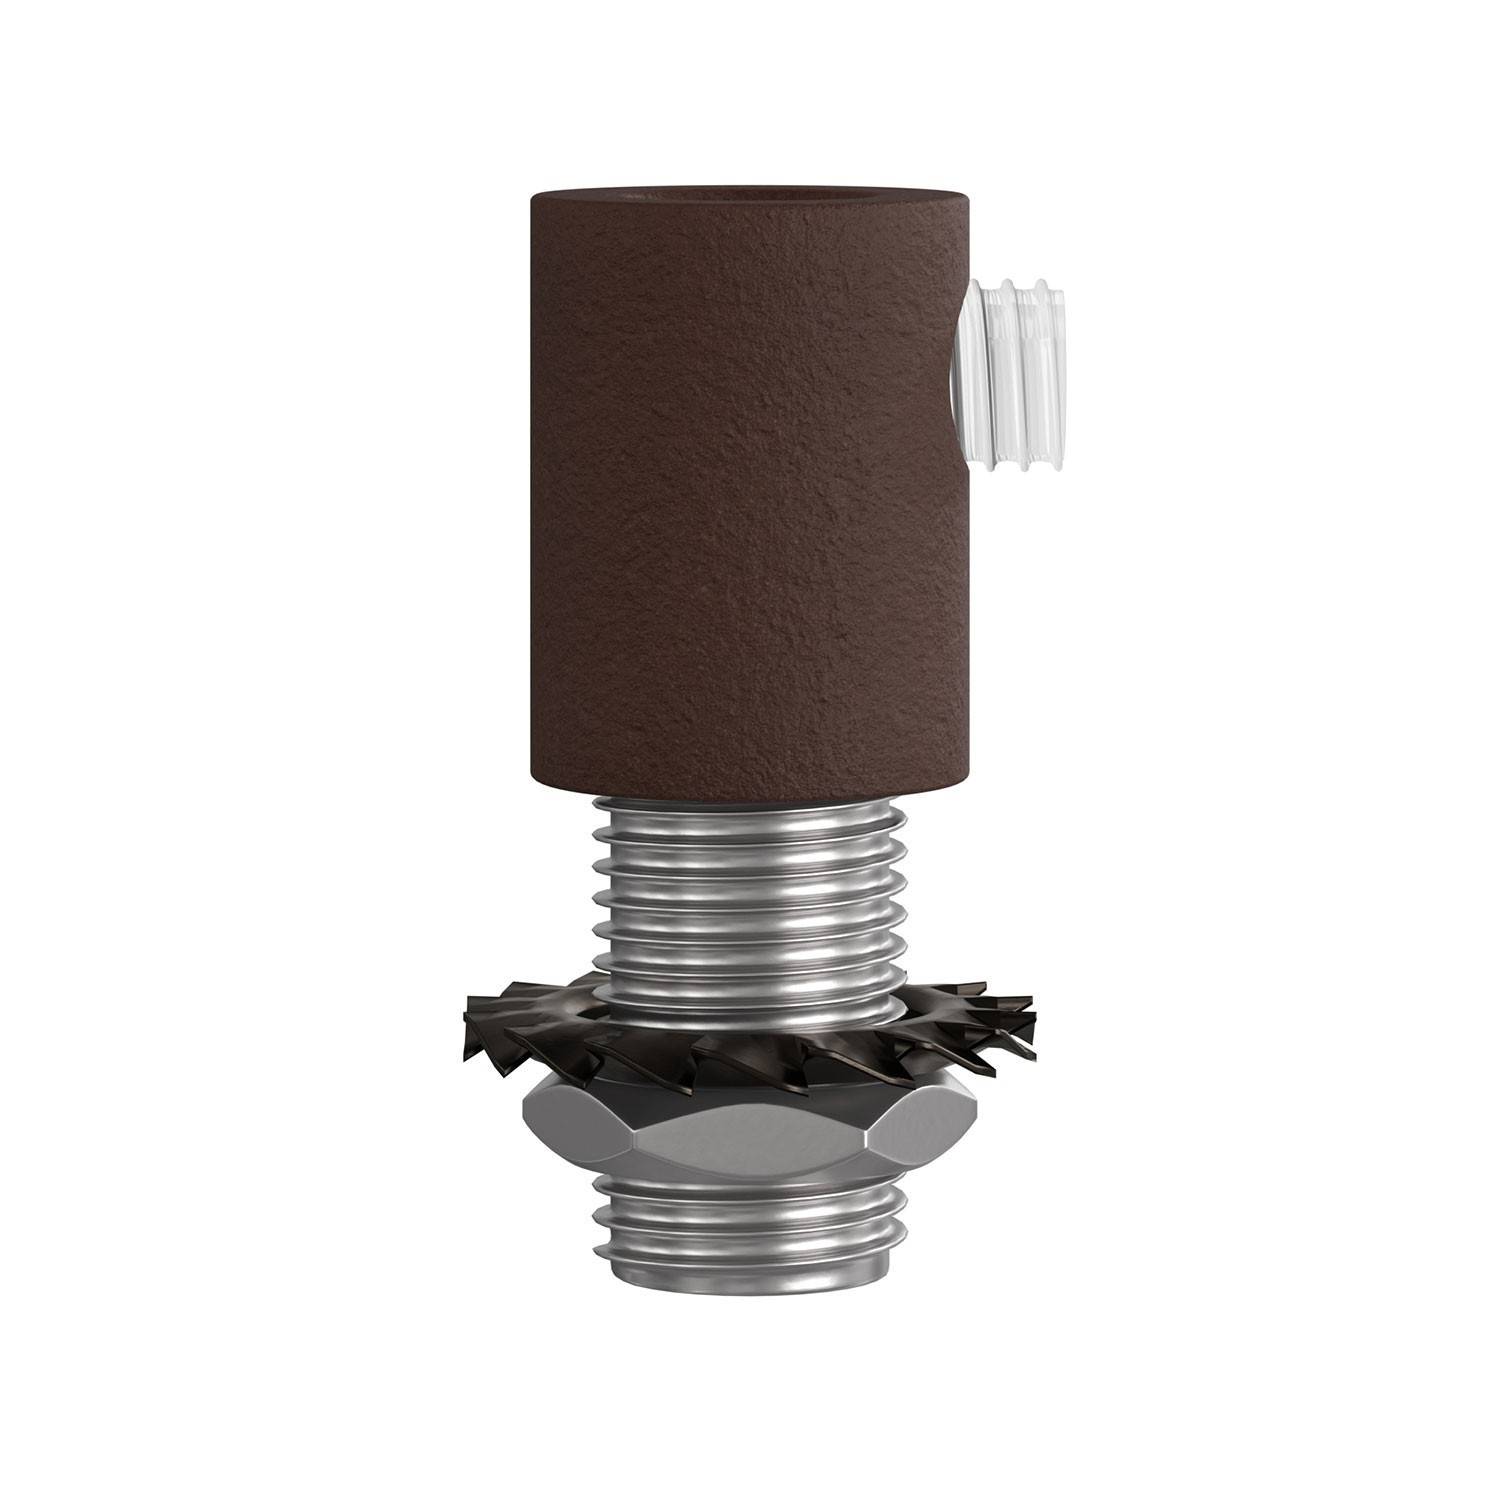 Colier metalic cilindric pentru cabluri complet cu tijă, piuliță și șaibă - 2 bucăți